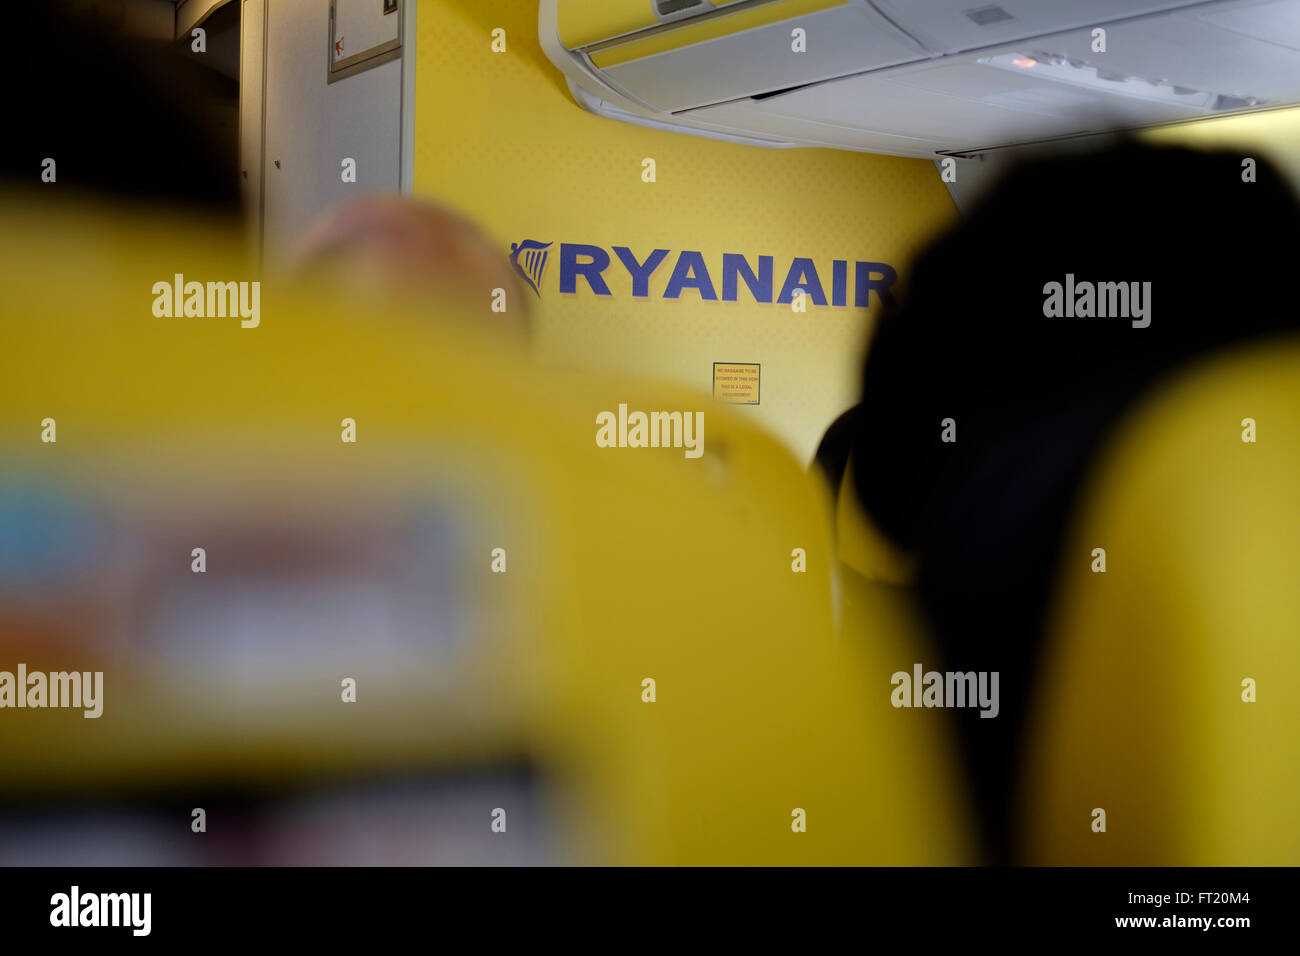 Ryanair airplane interior Stock Photo - Alamy